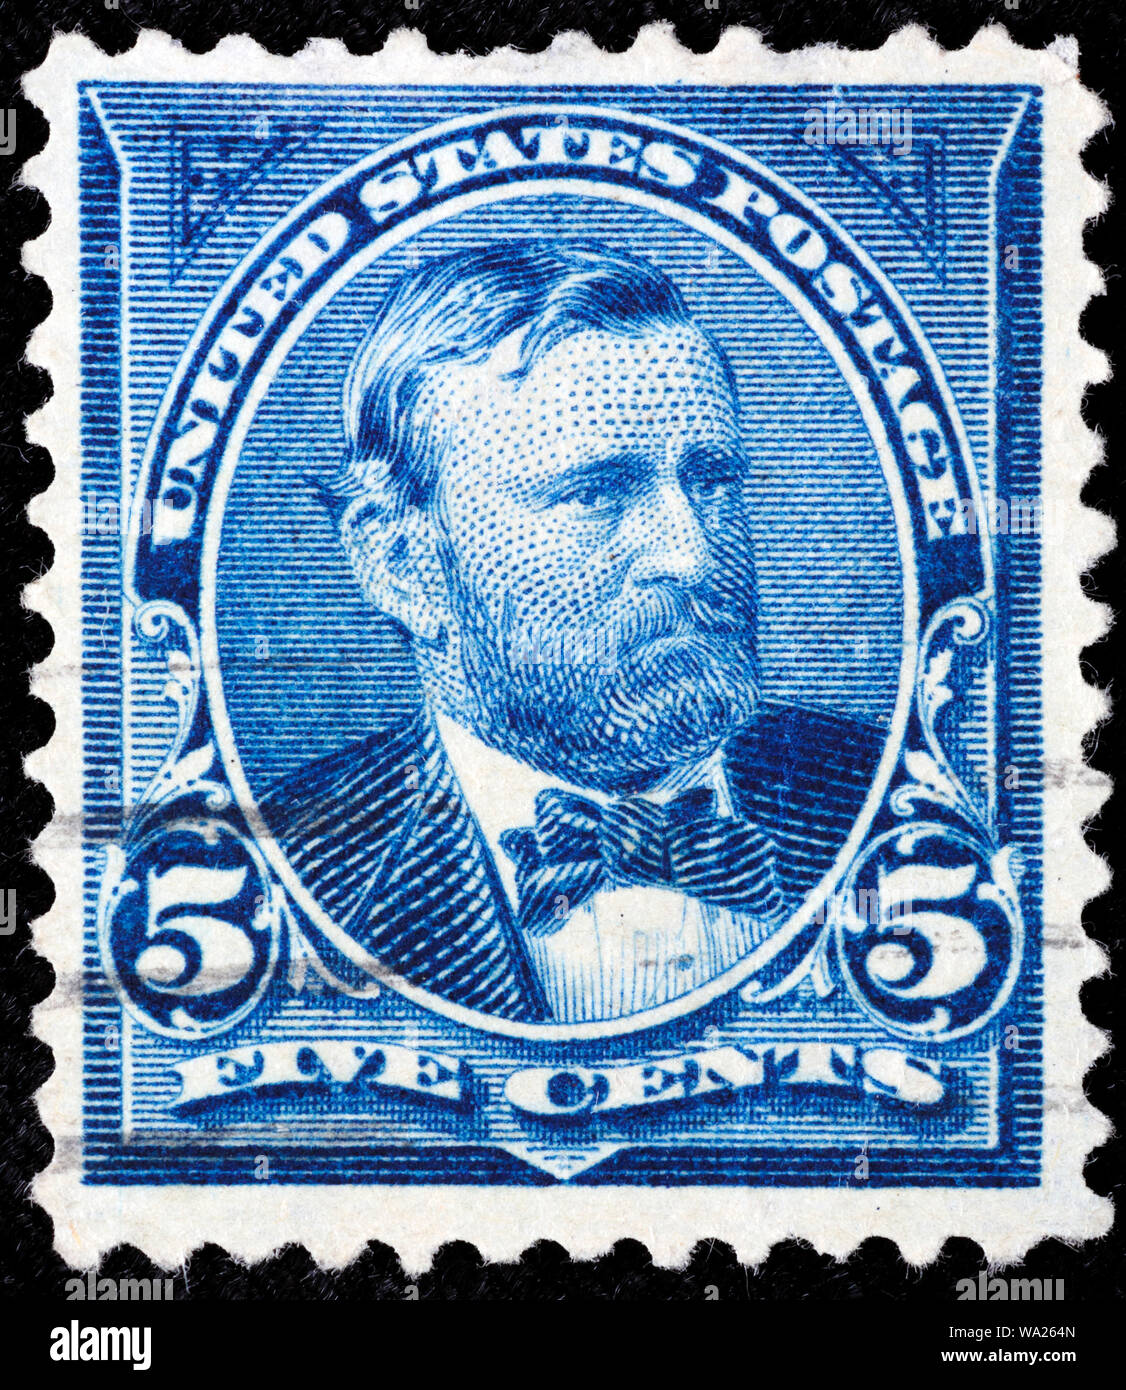 Ulysses S. Grant (1822-1885), Président des Etats-Unis, timbre-poste, USA, 1898 Banque D'Images